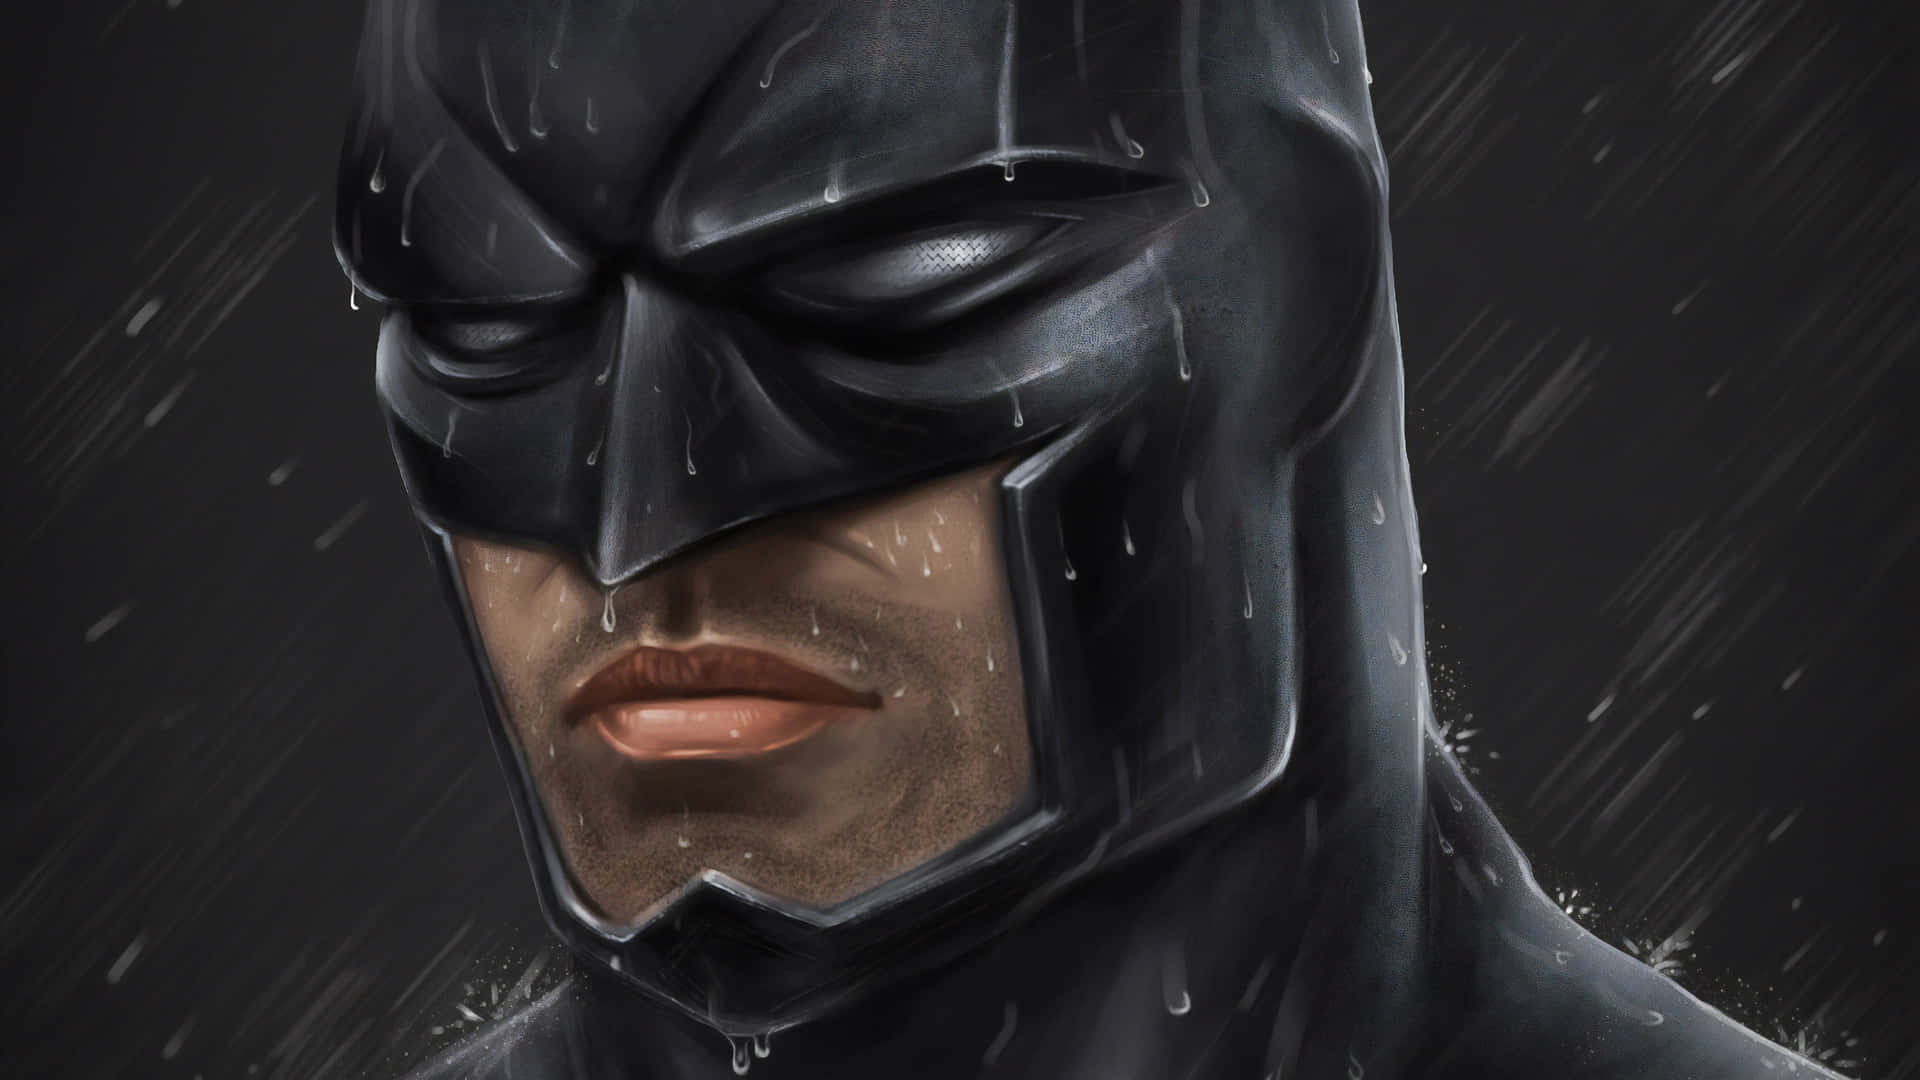 Dark Knight Rain Vigilance.jpg Wallpaper